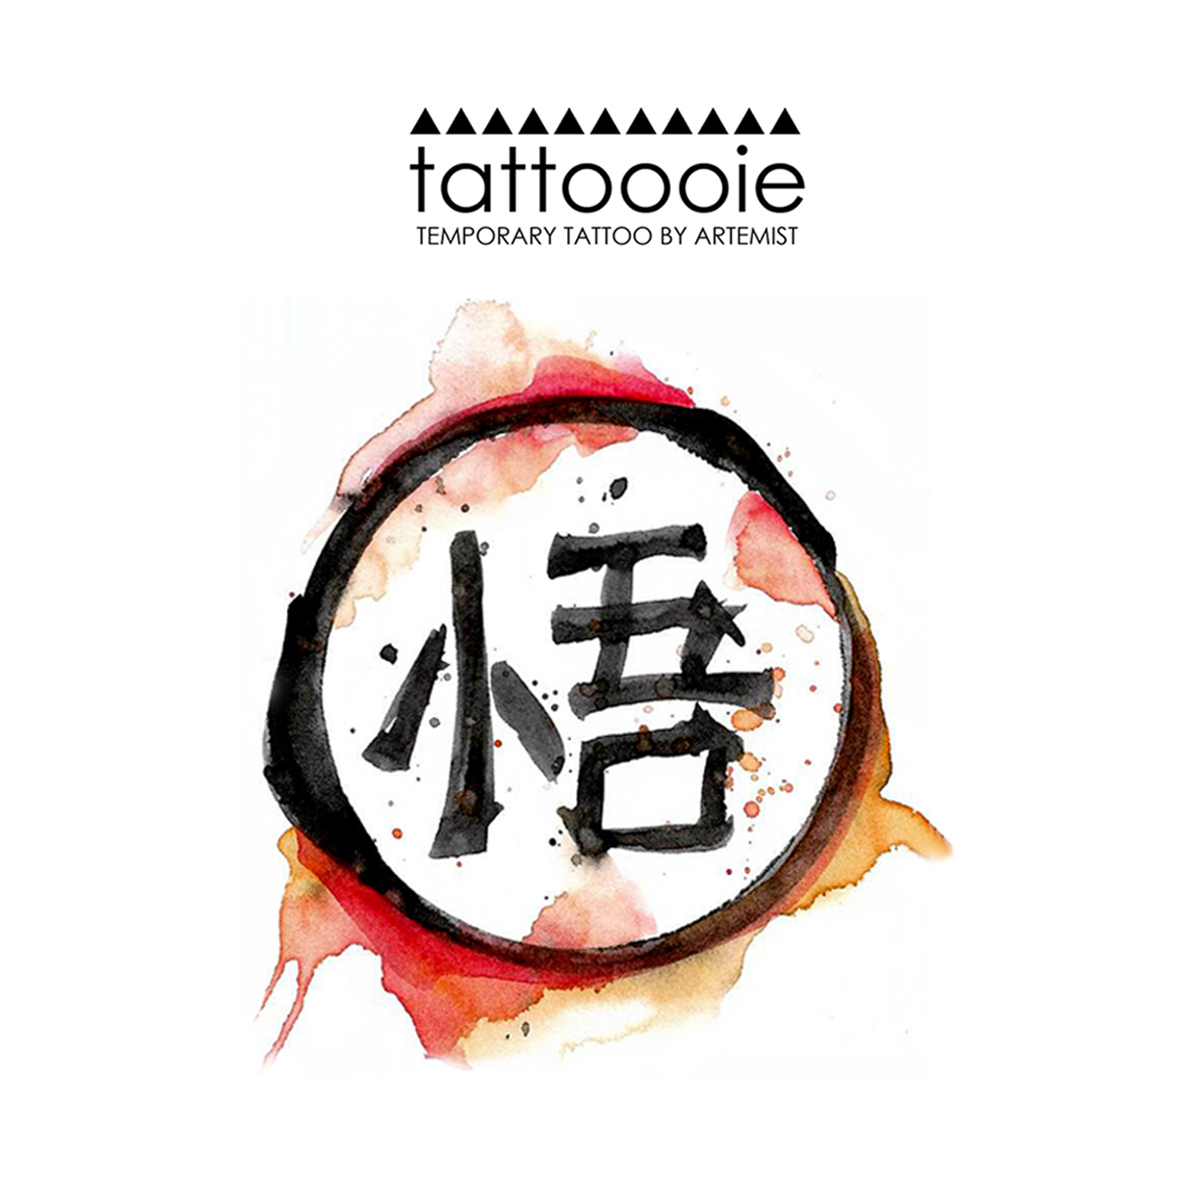 tattoo piccolo daimaoh kanji by BardockSonic on DeviantArt